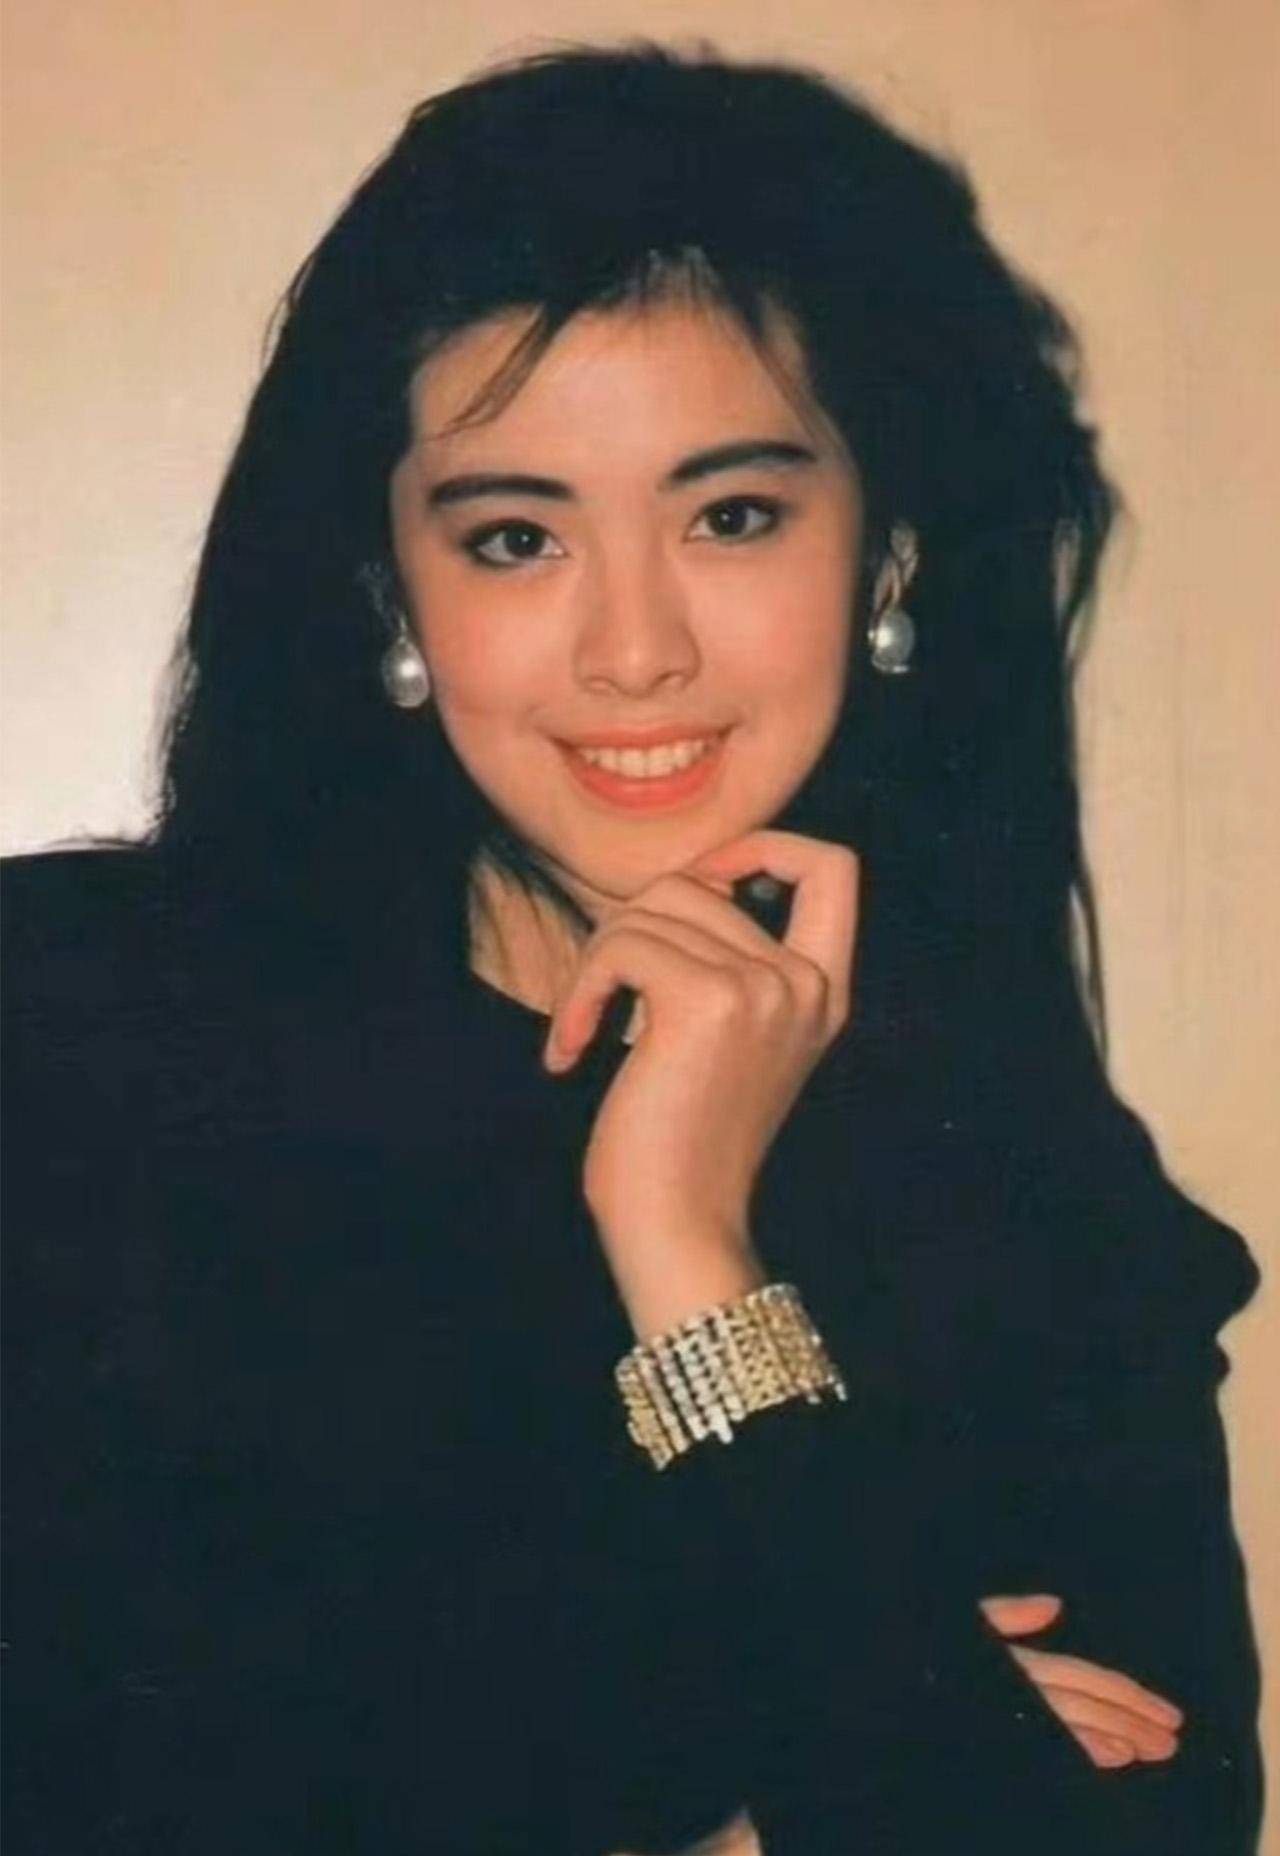 香港女星80-90年代名字图片